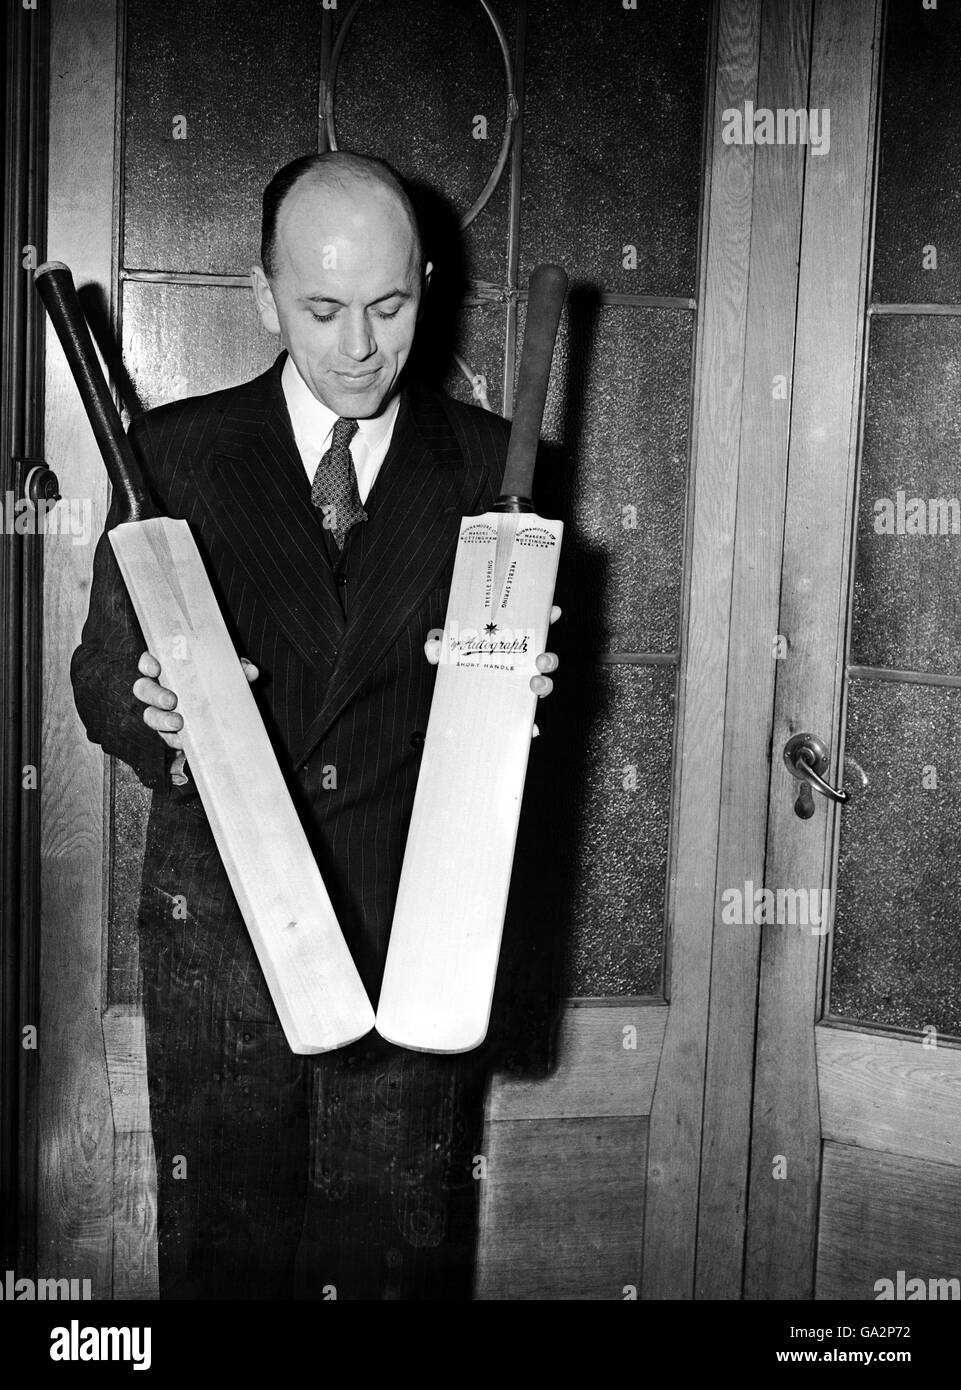 Un représentant de Gunn et Moore avec deux battes de cricket Banque D'Images